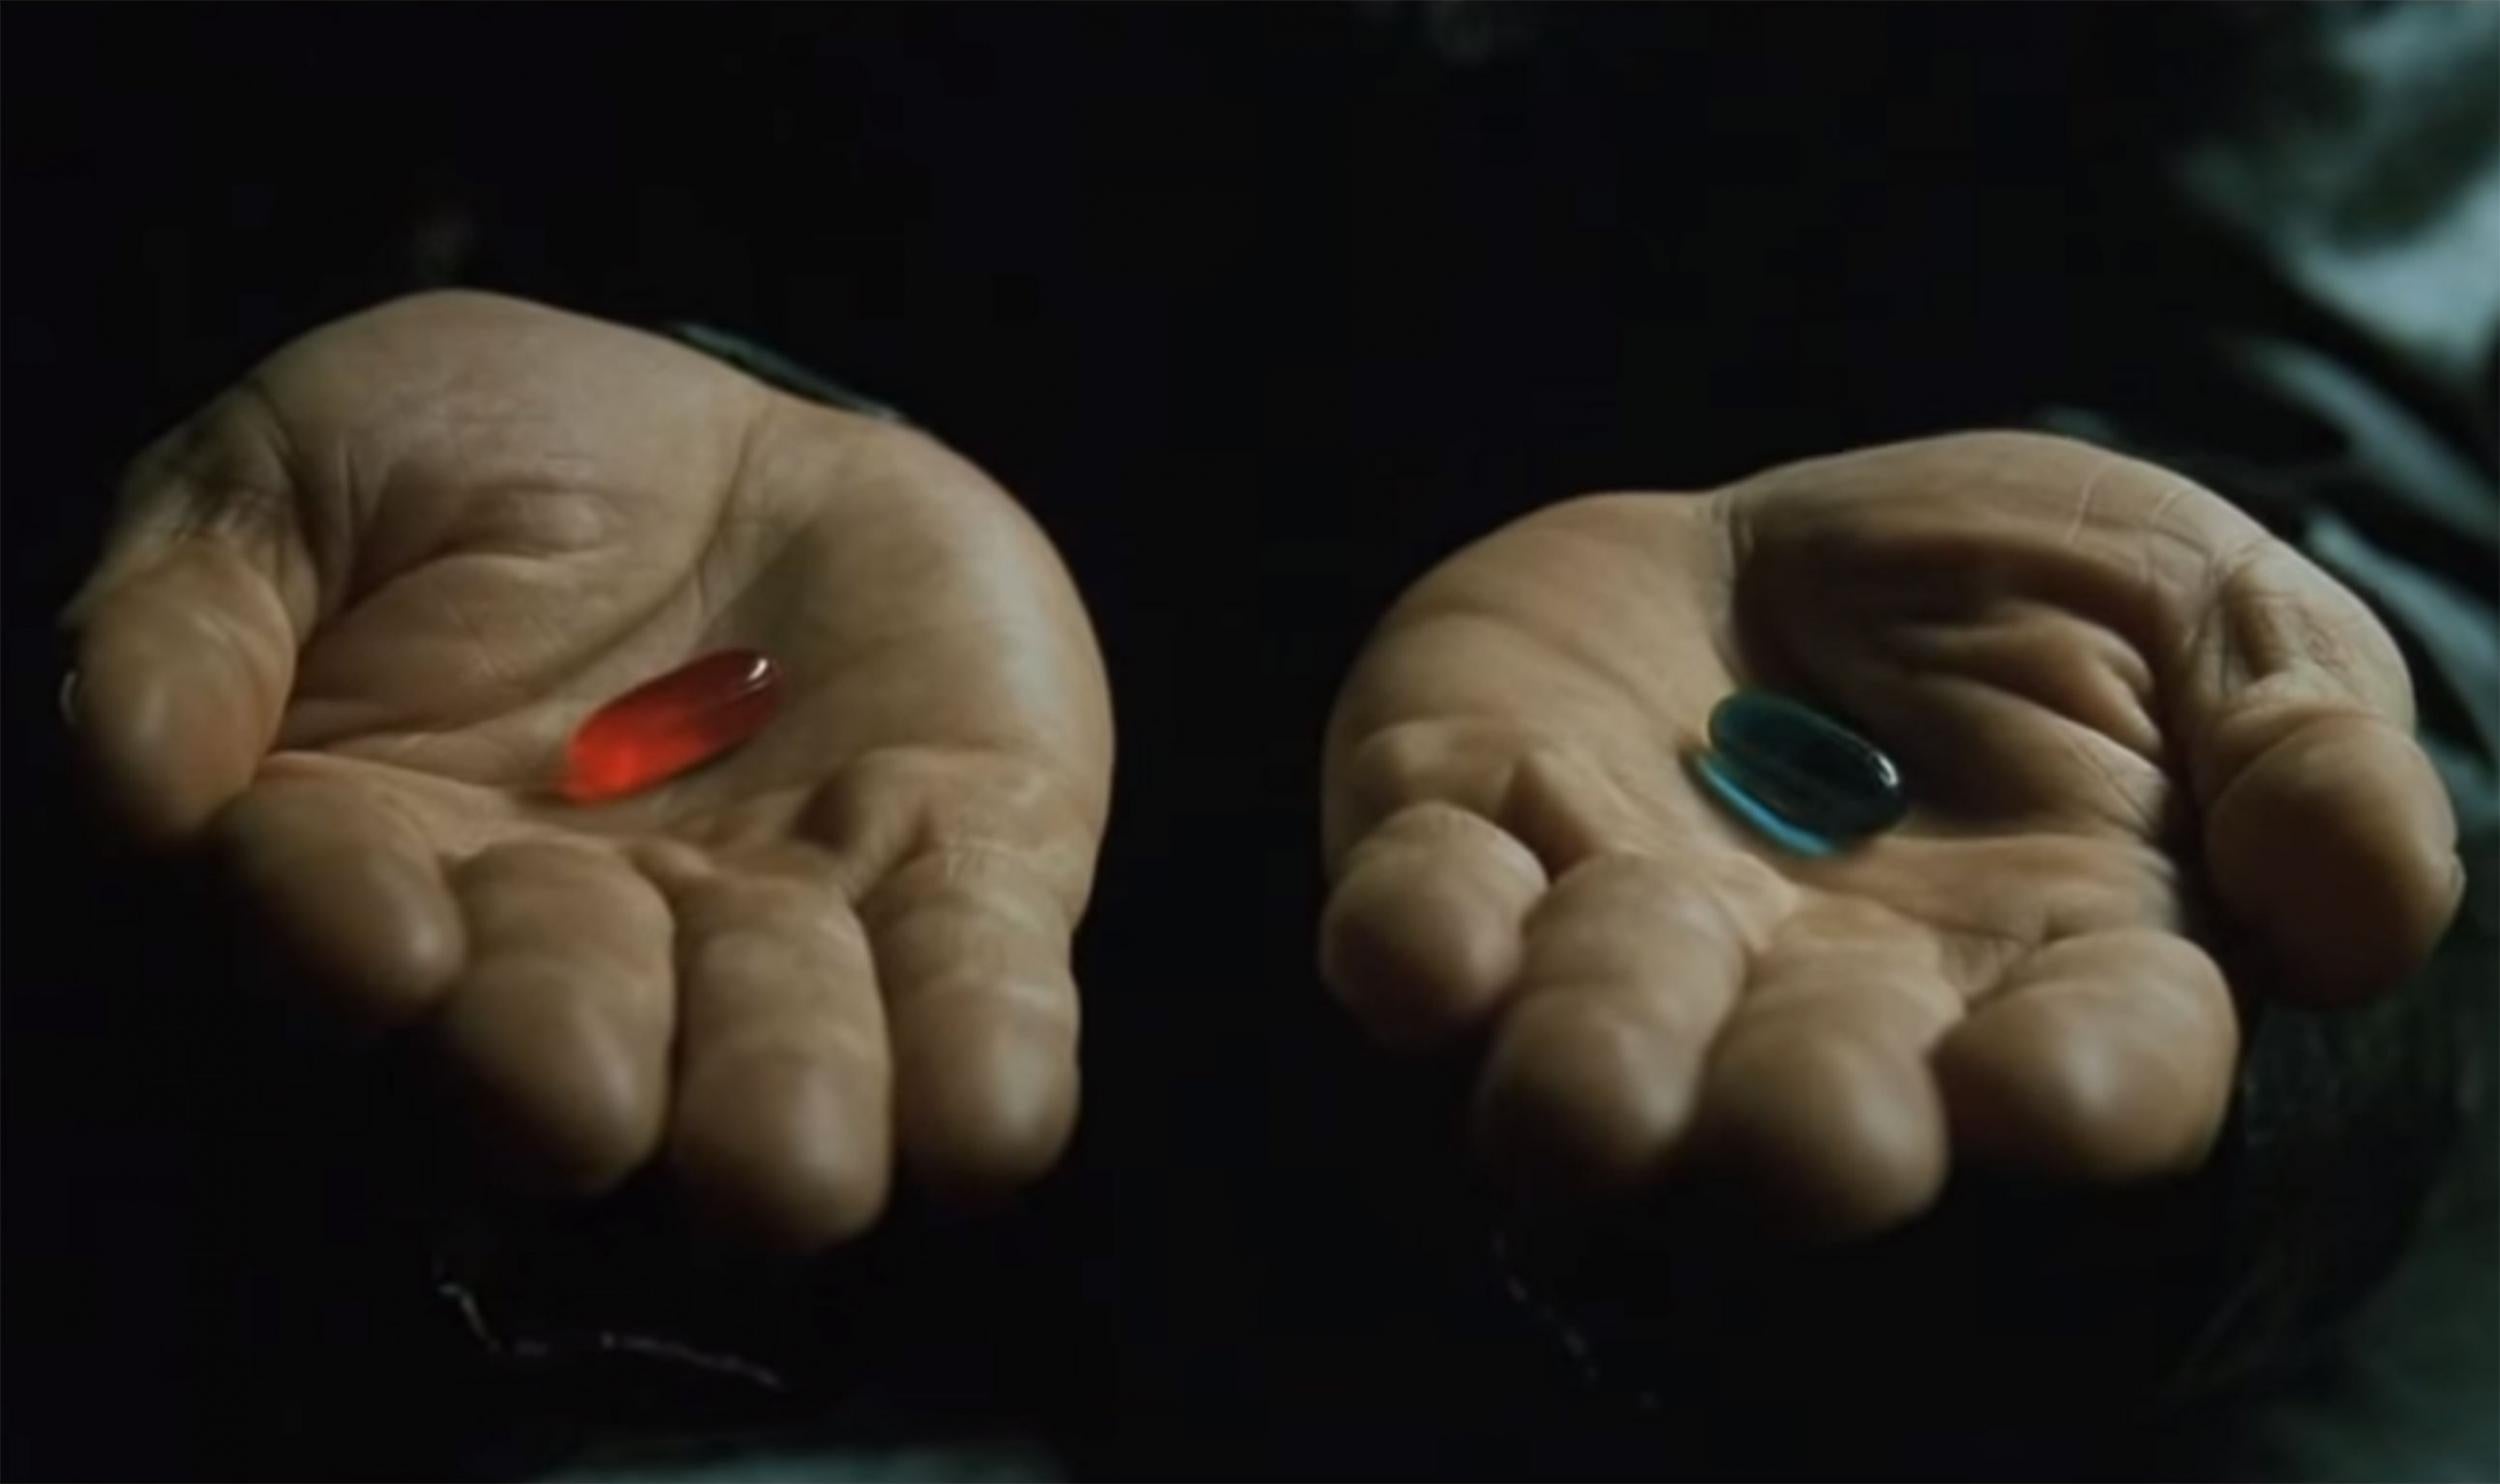 youtube matrix blue pill red pill